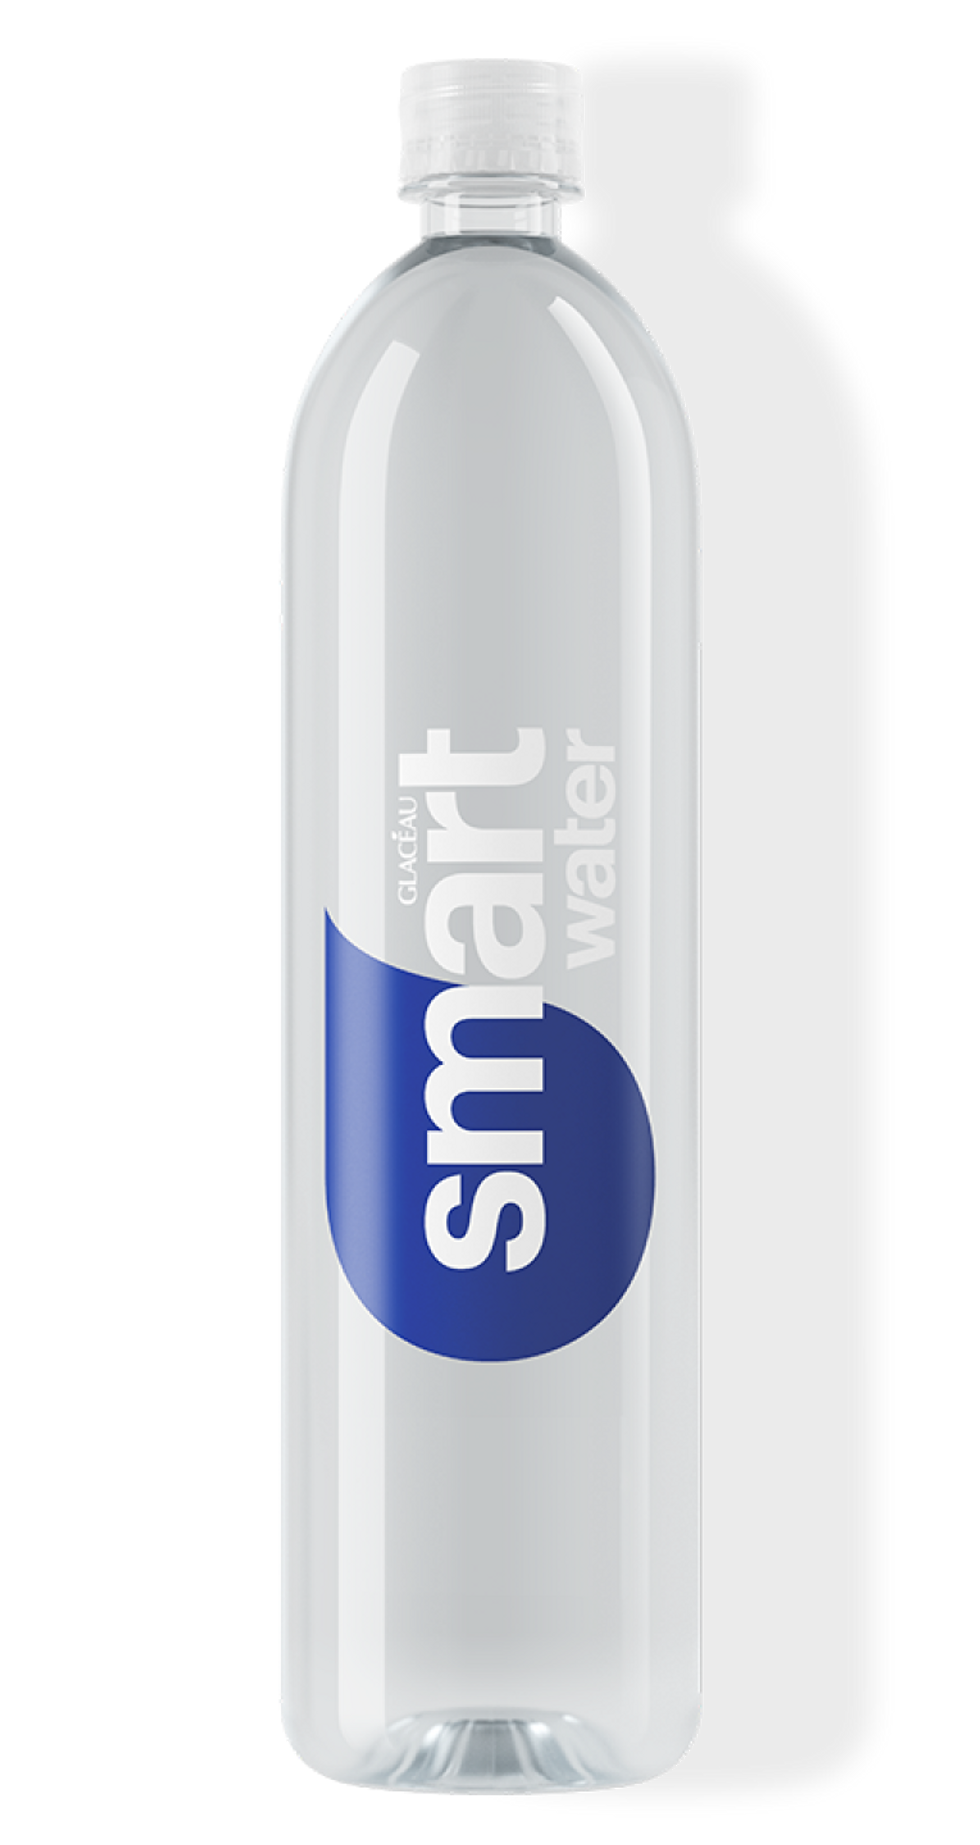 https://www.brit.co/media-library/best-bottled-water-smartwater.png?id=33584410&width=980